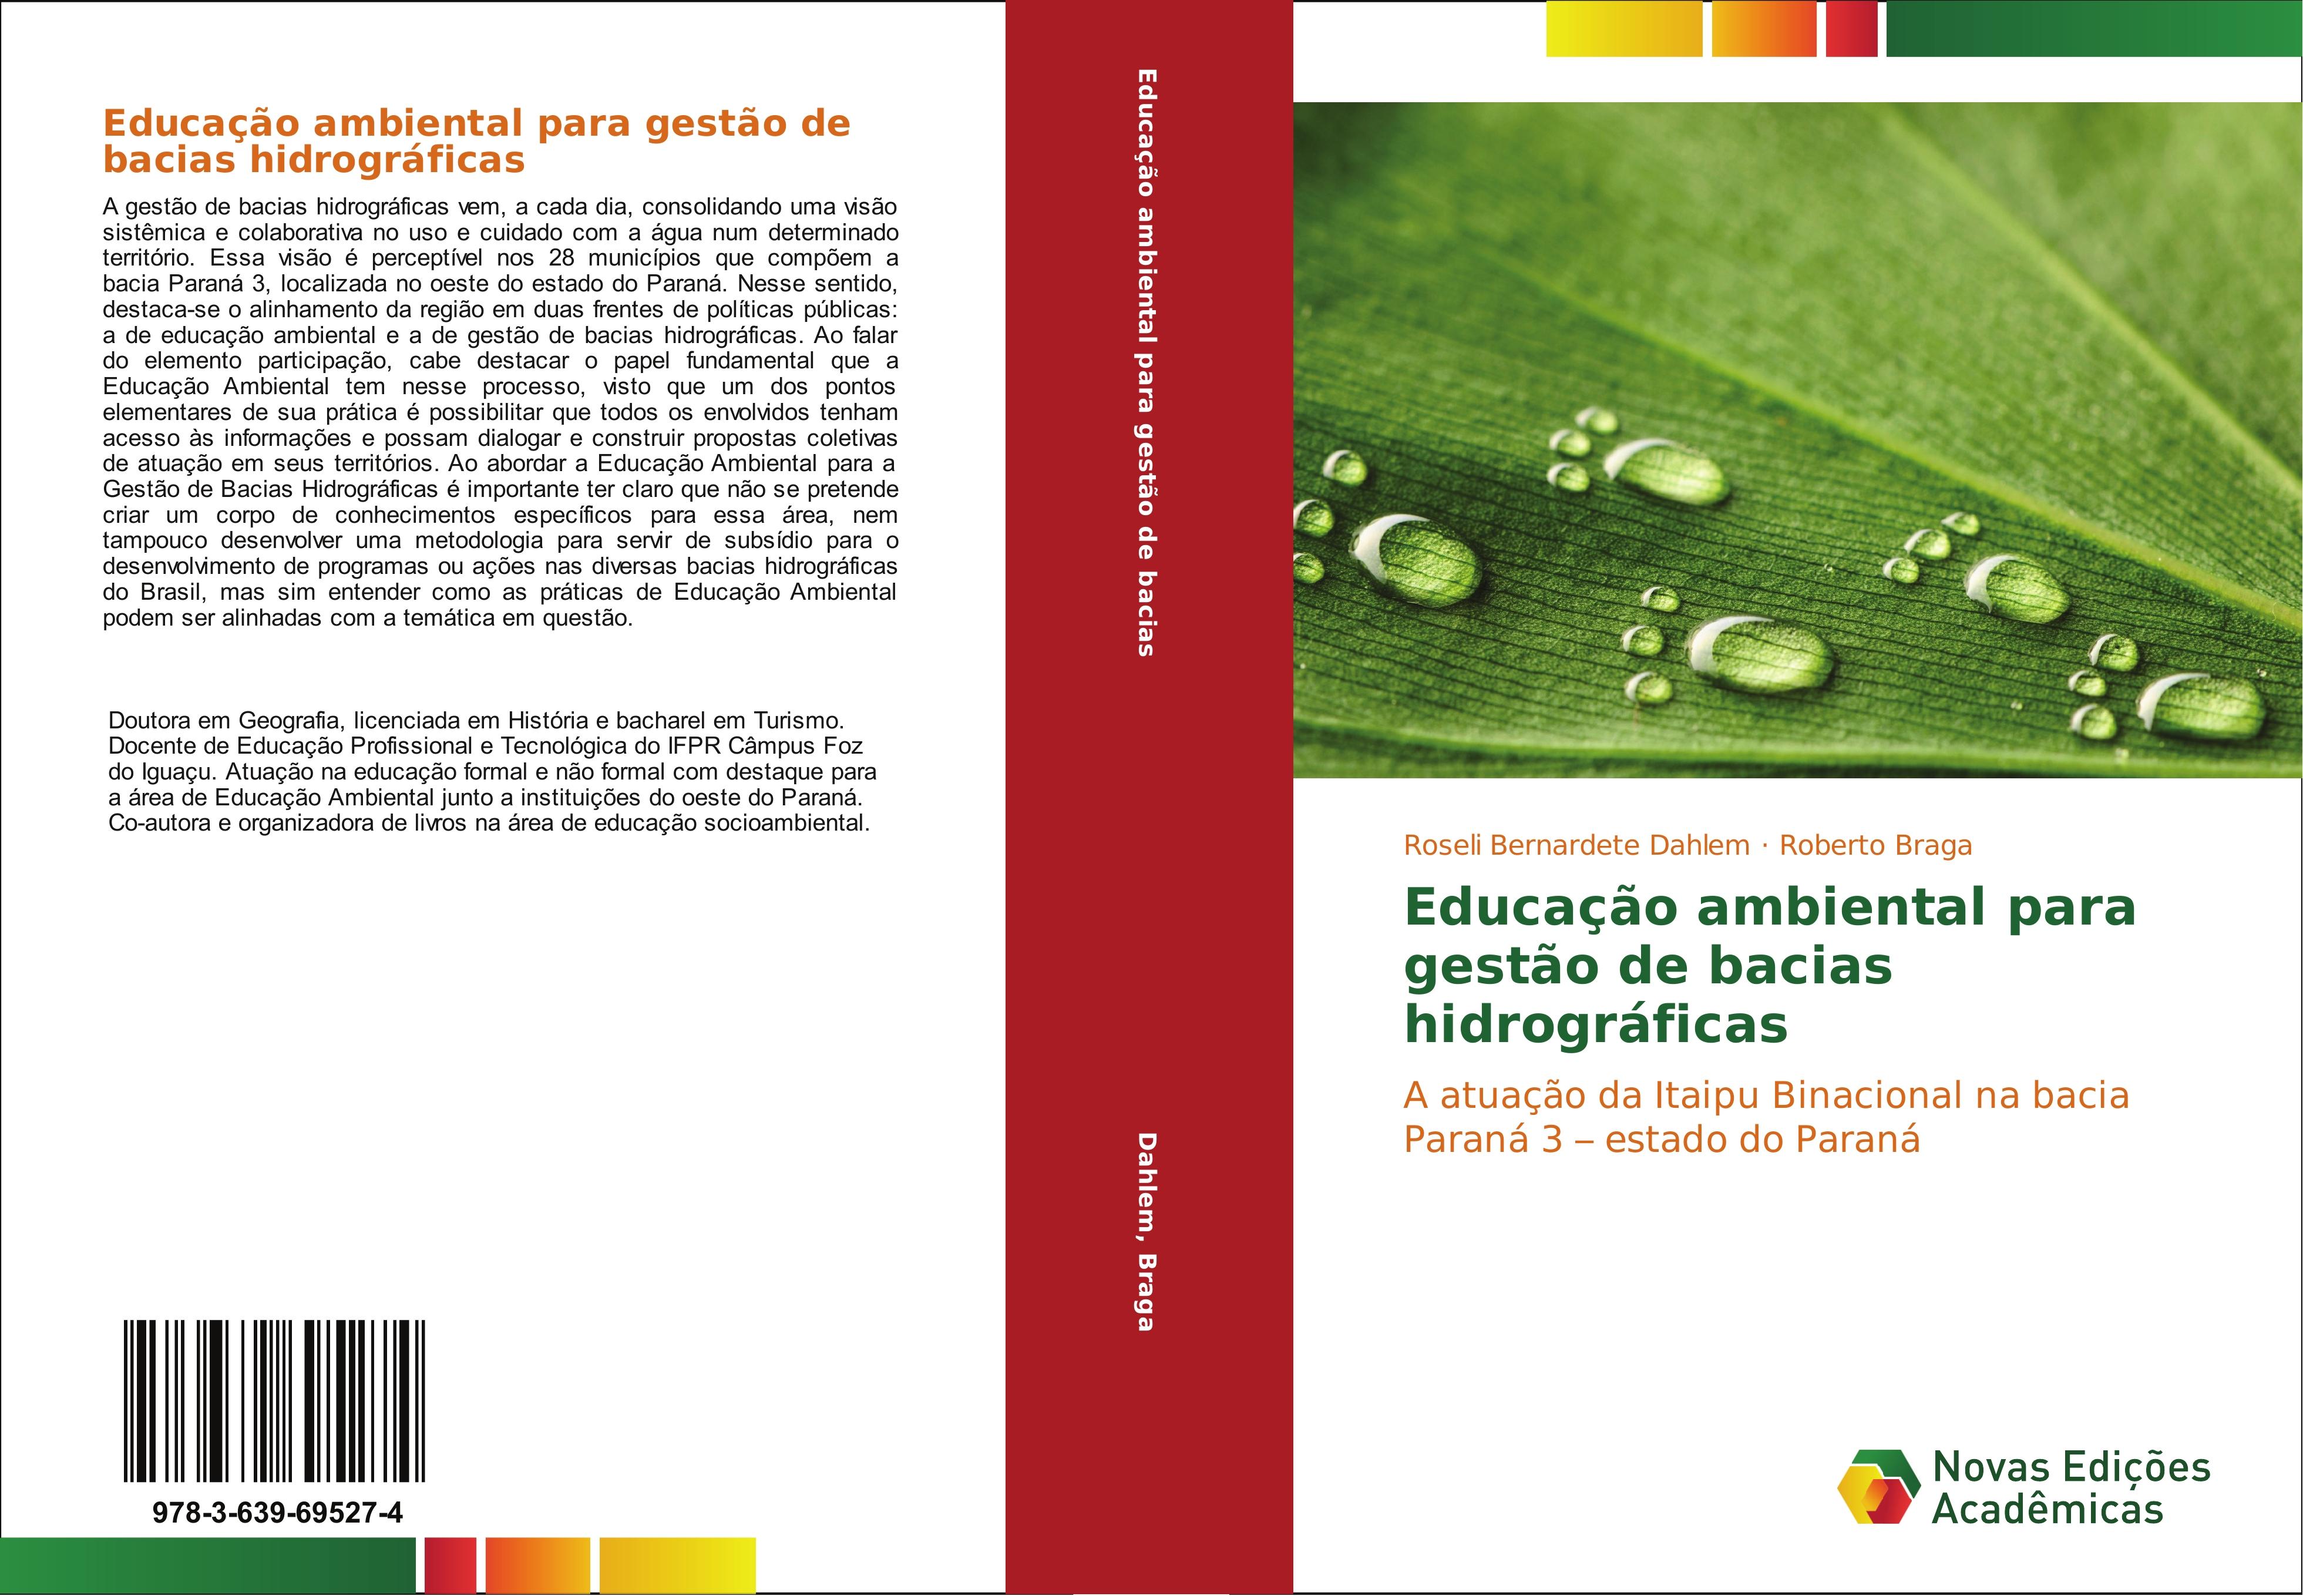 Educação ambiental para gestão de bacias hidrográficas - Roseli Bernardete Dahlem Roberto Braga